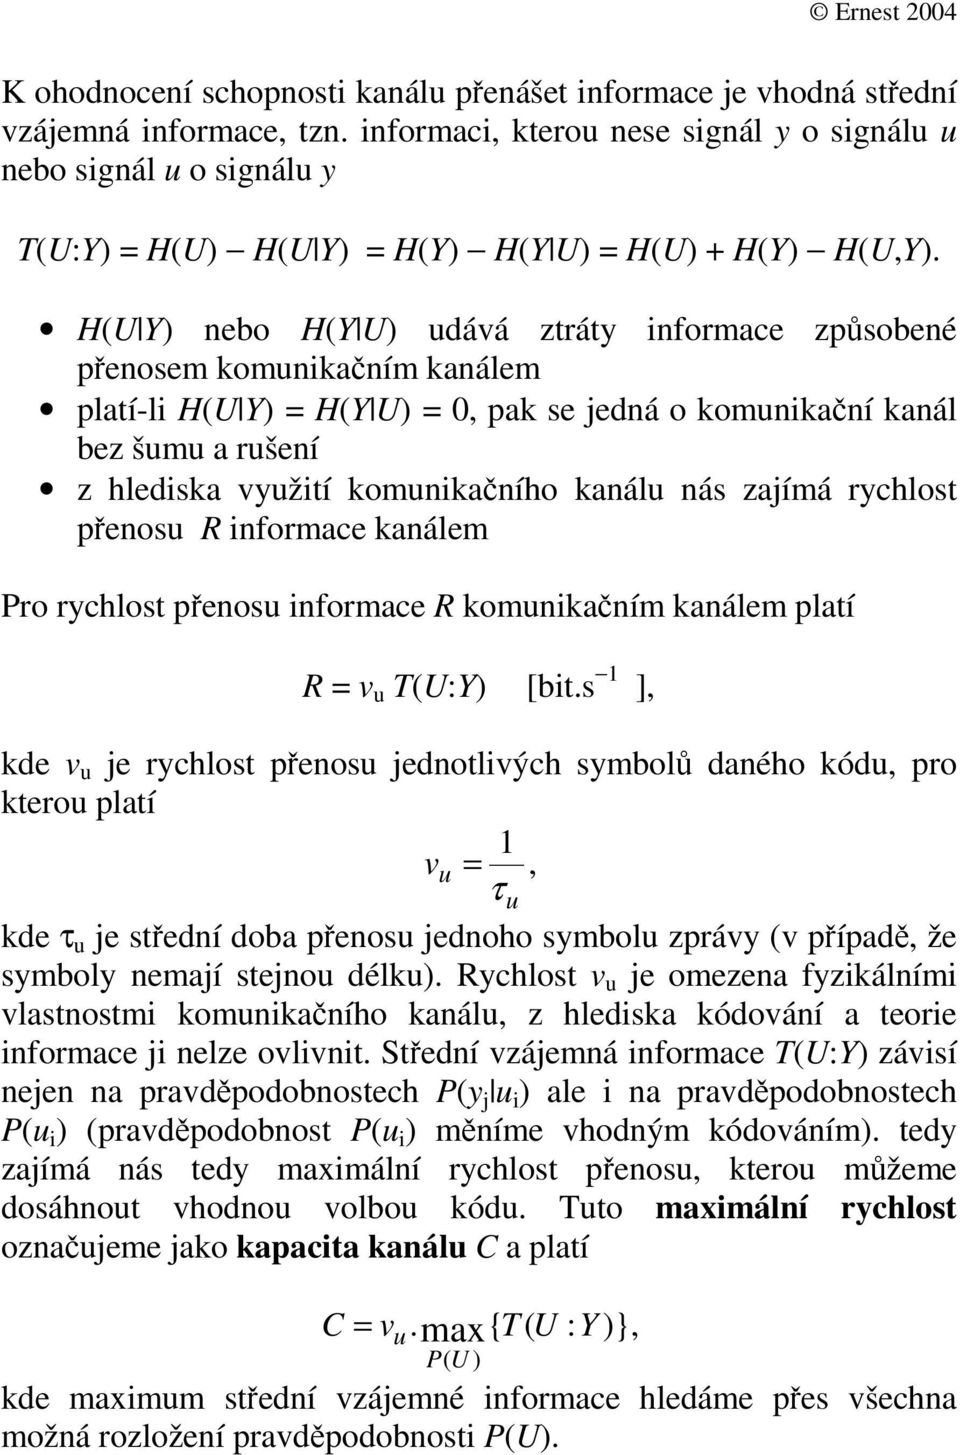 R infomace kanálem Po ychlot peno infomace R komnikaním kanálem platí R = v T(U:Y [bit.